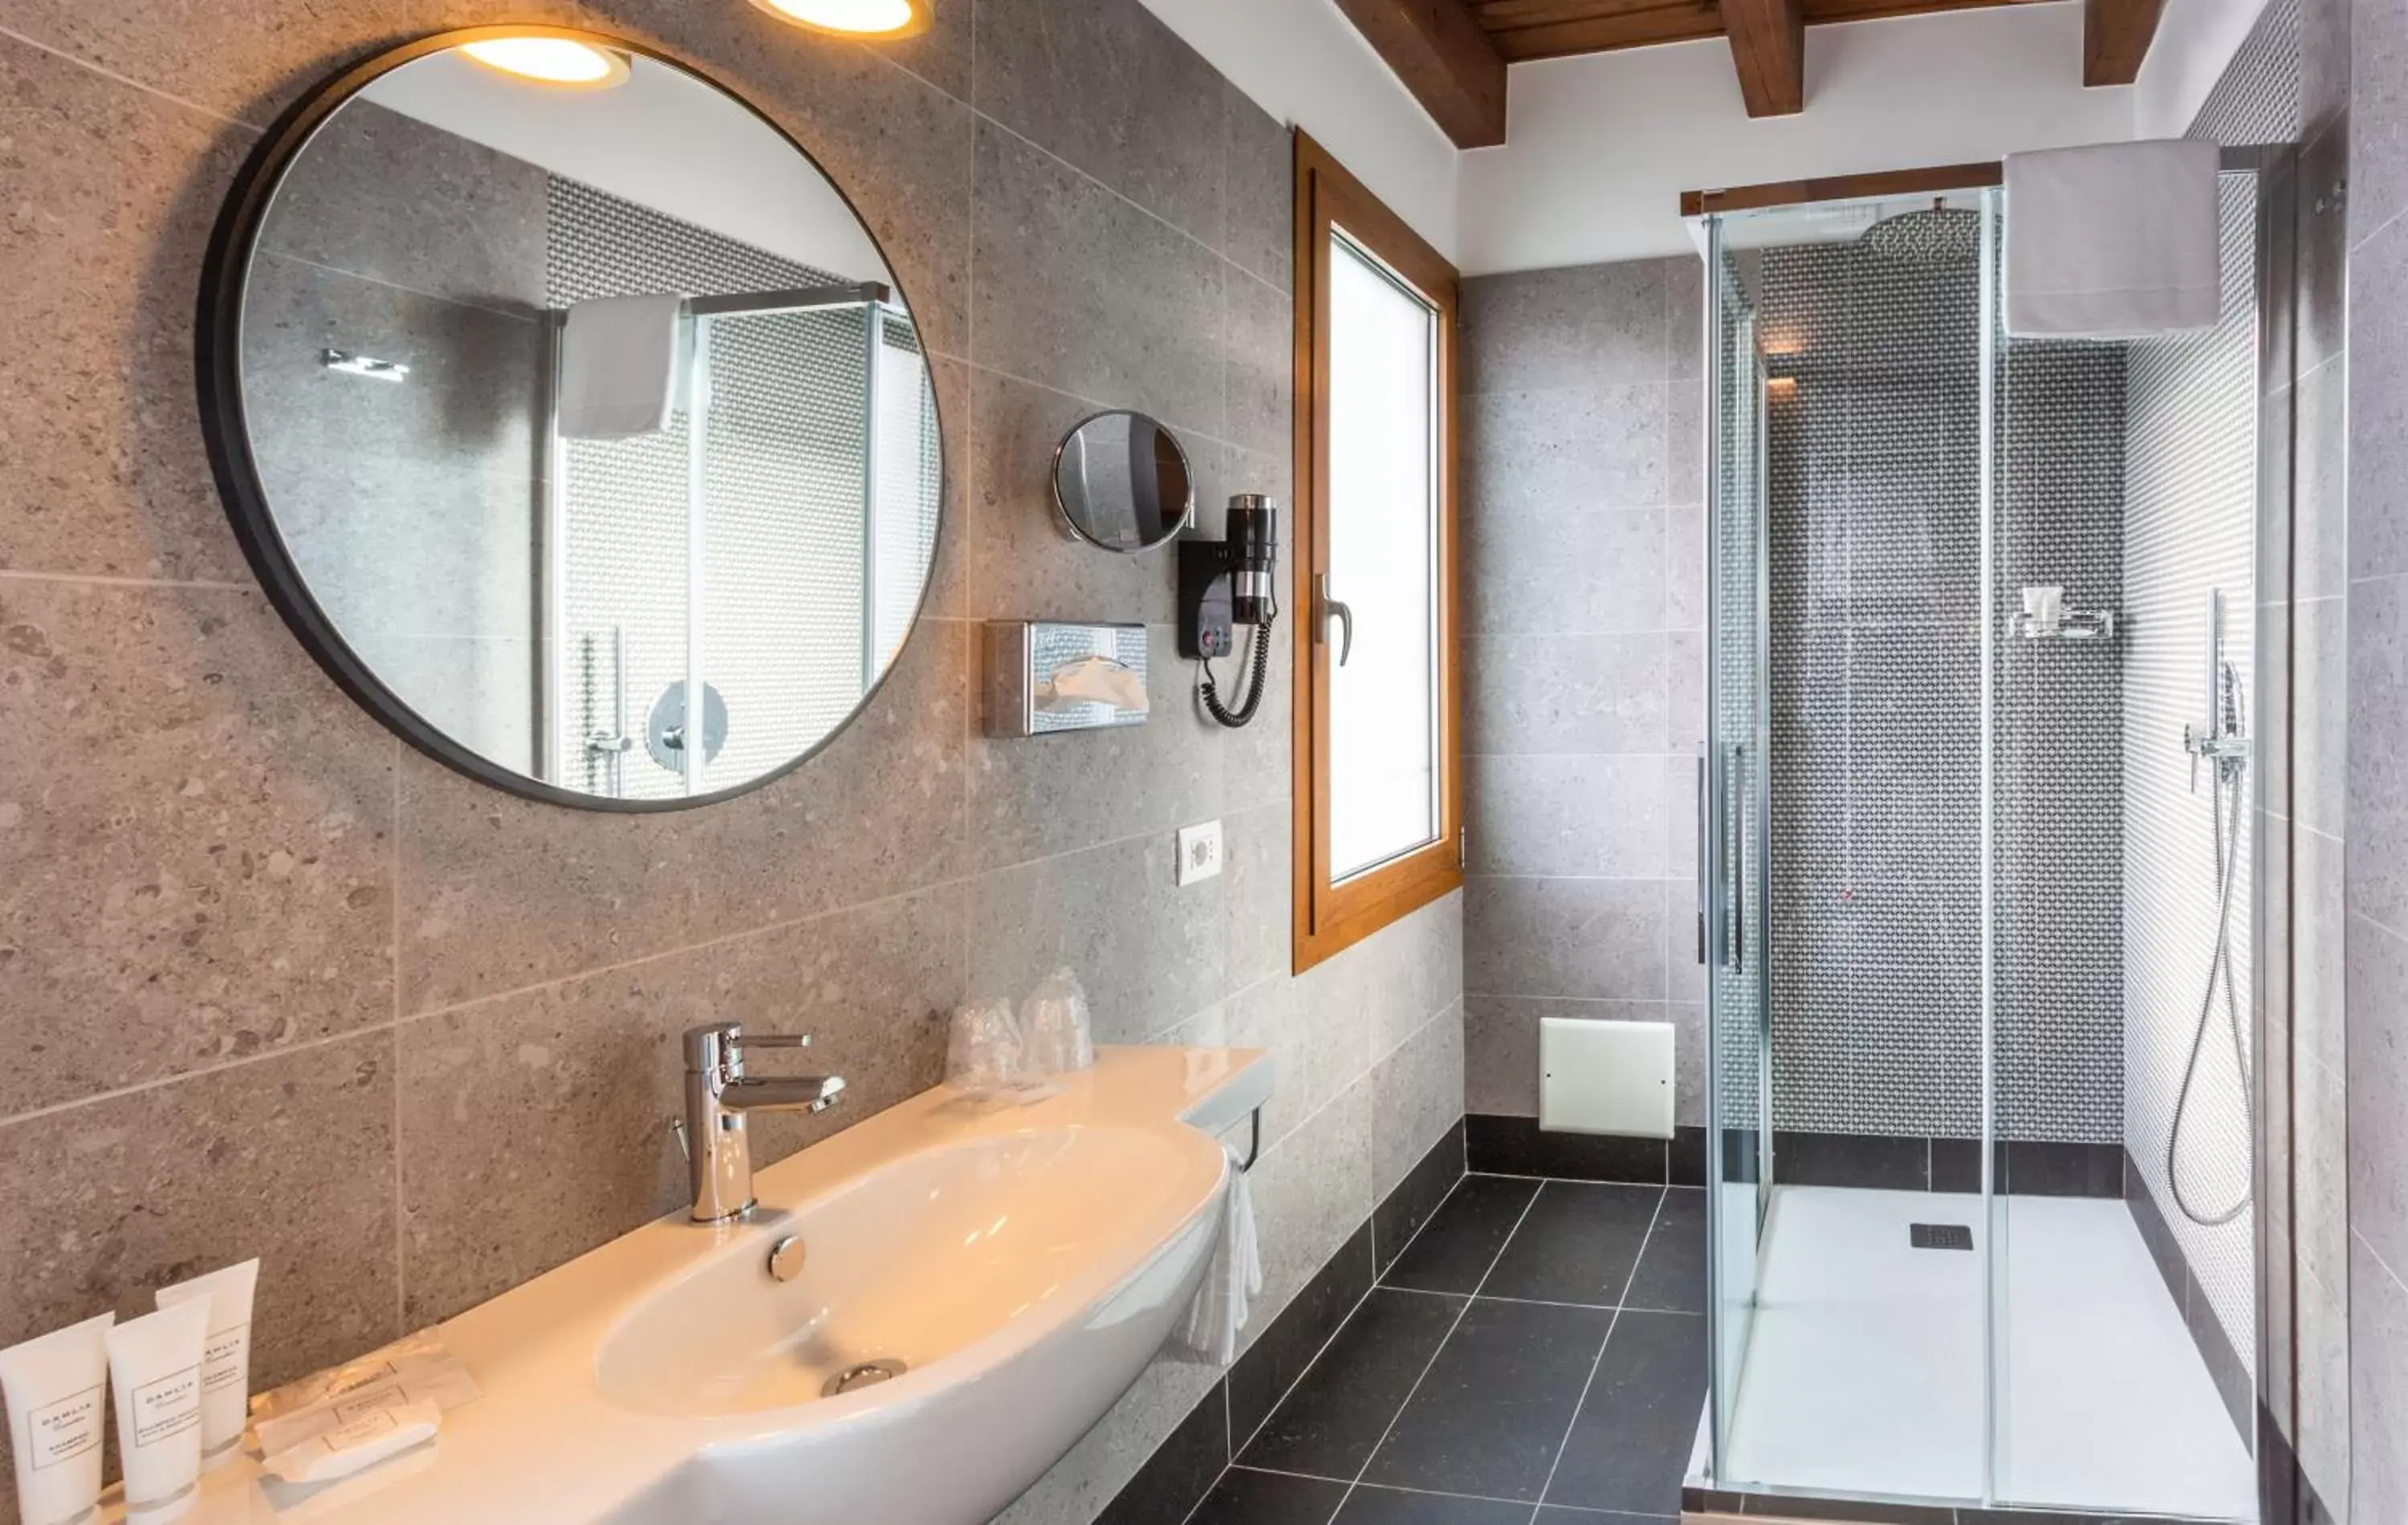 Shower, Bathroom in BEST WESTERN Titian Inn Hotel Treviso